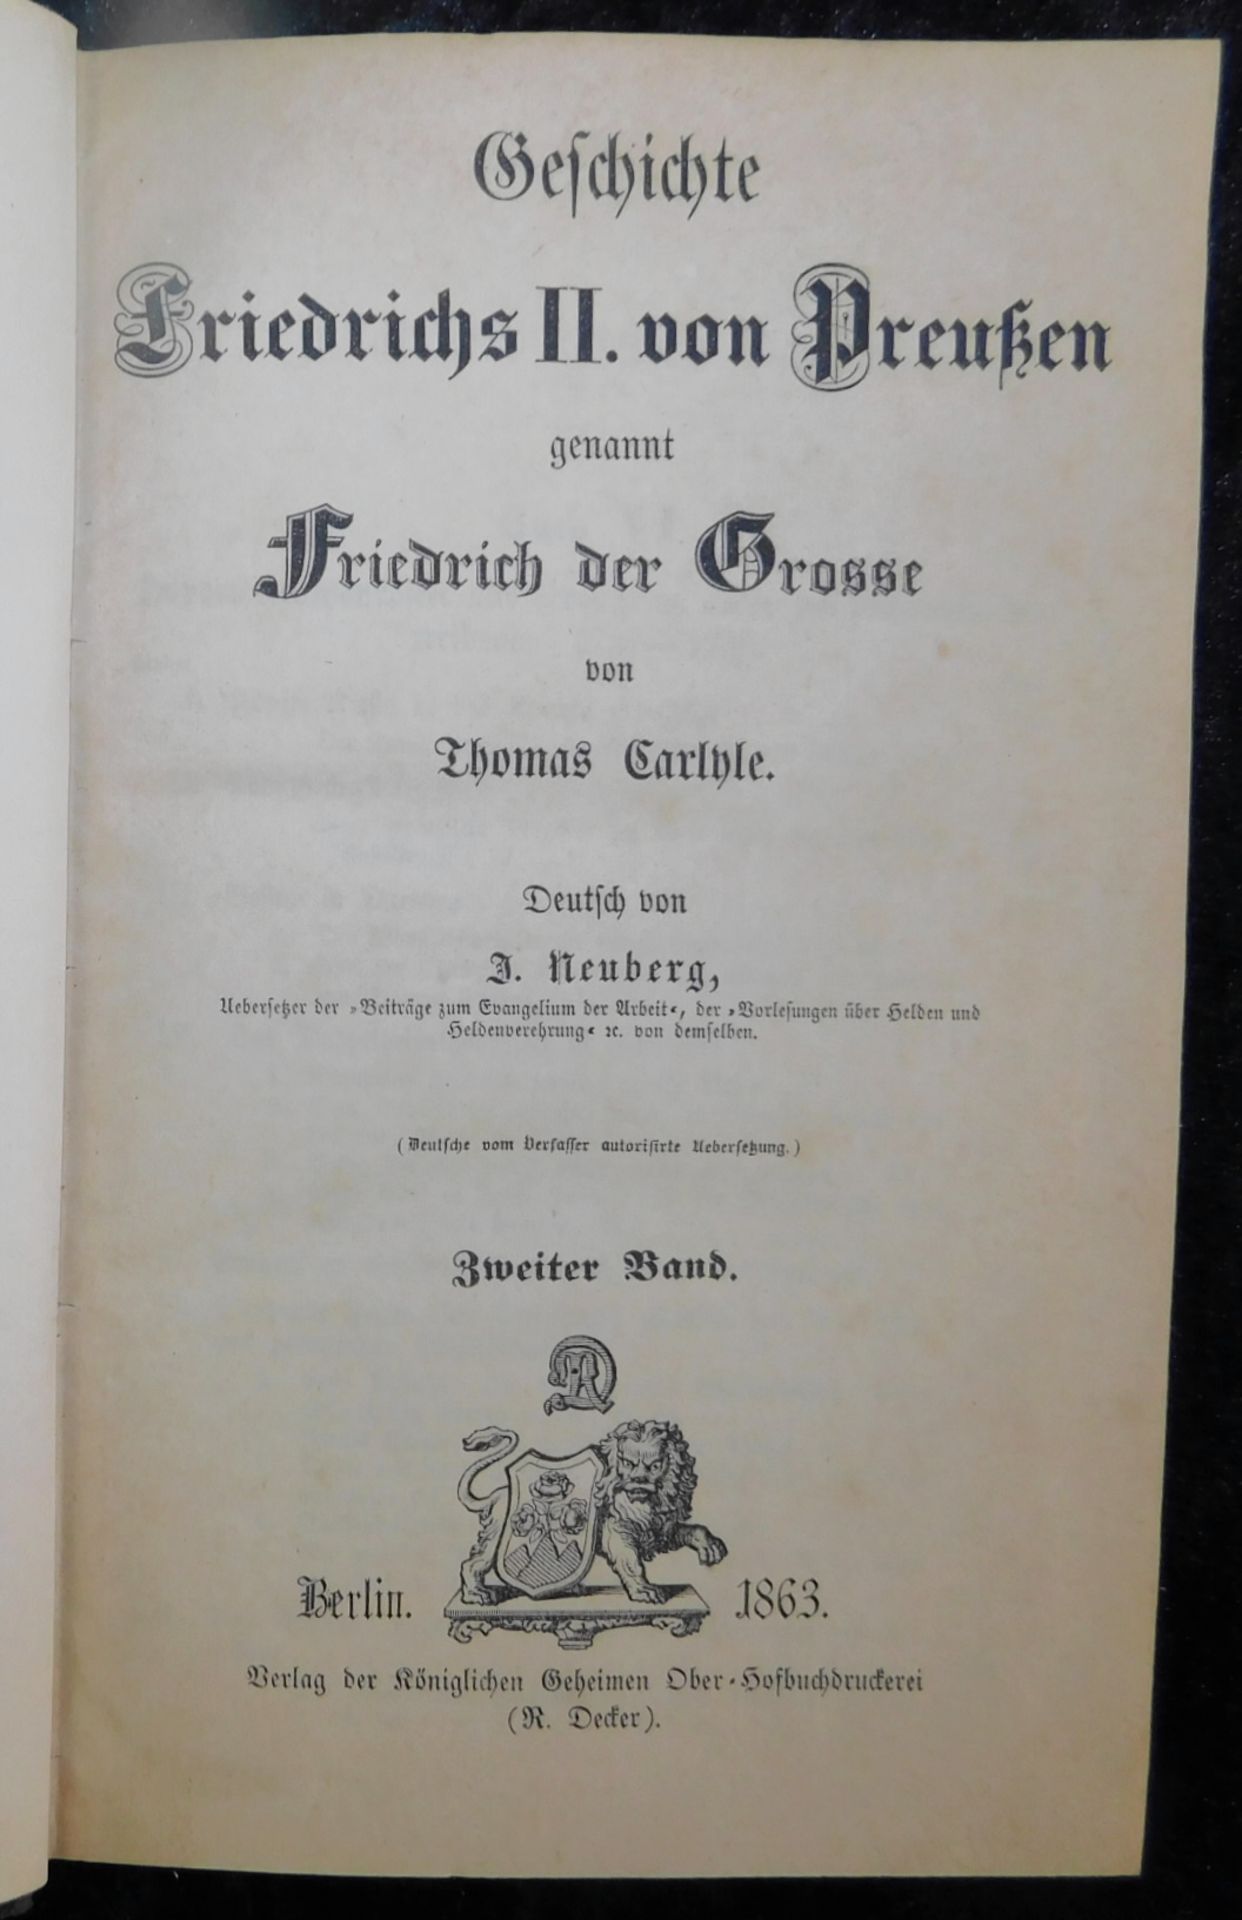 Friedrich der Große, In 5 Bänden, Thomas Carlyle, Deutsch von J. Neuberg, Verlag R. Decker, Berlin 1 - Image 3 of 6